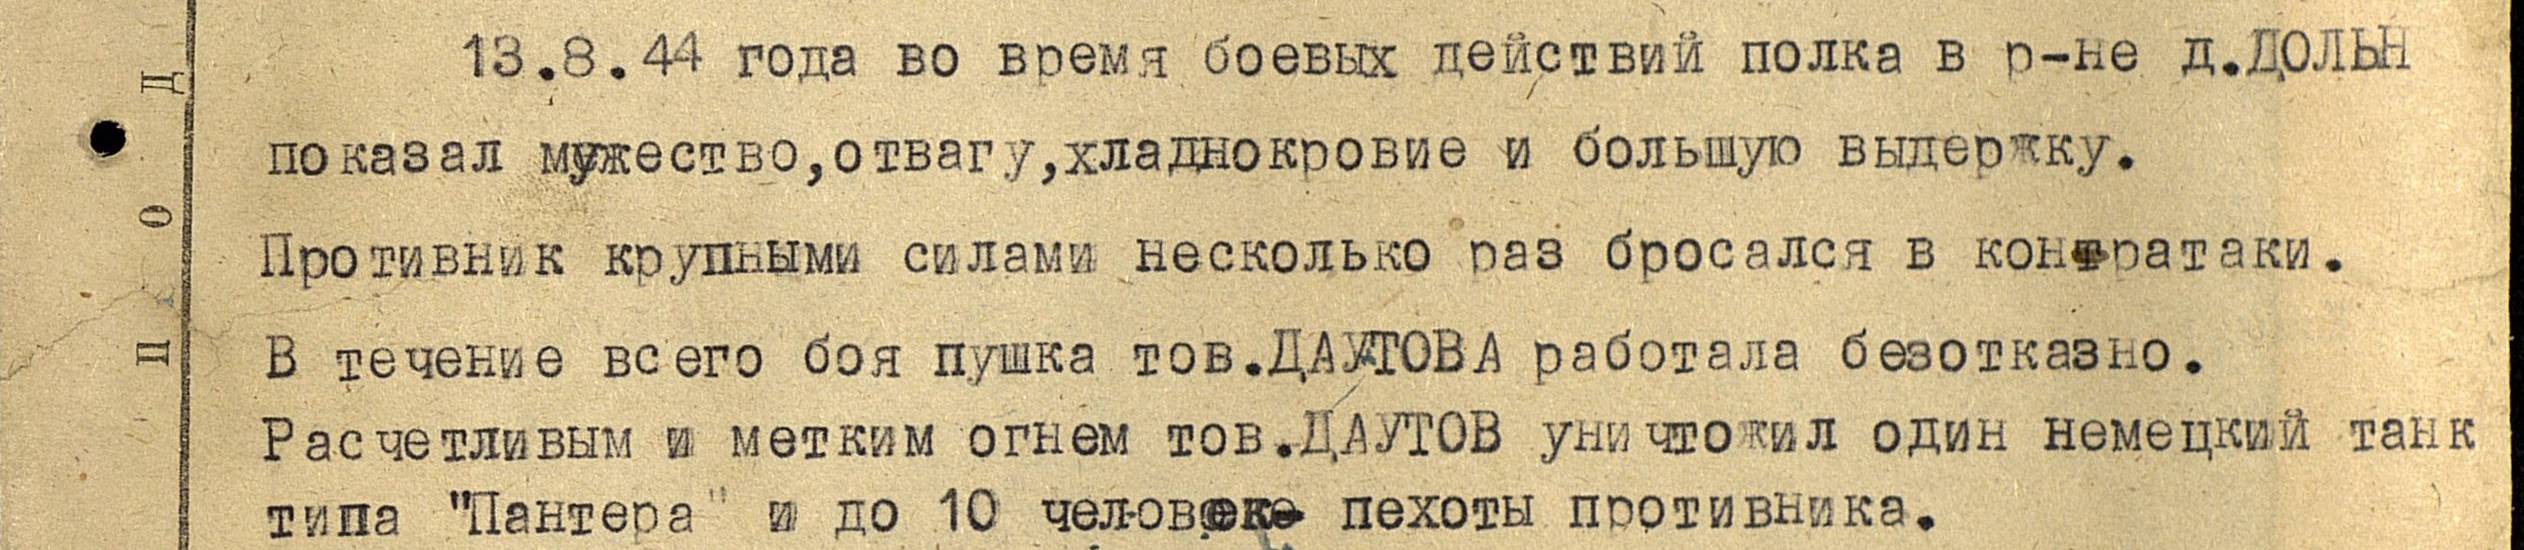 Описание подвига Даутова А.Г. от 13.08.1944